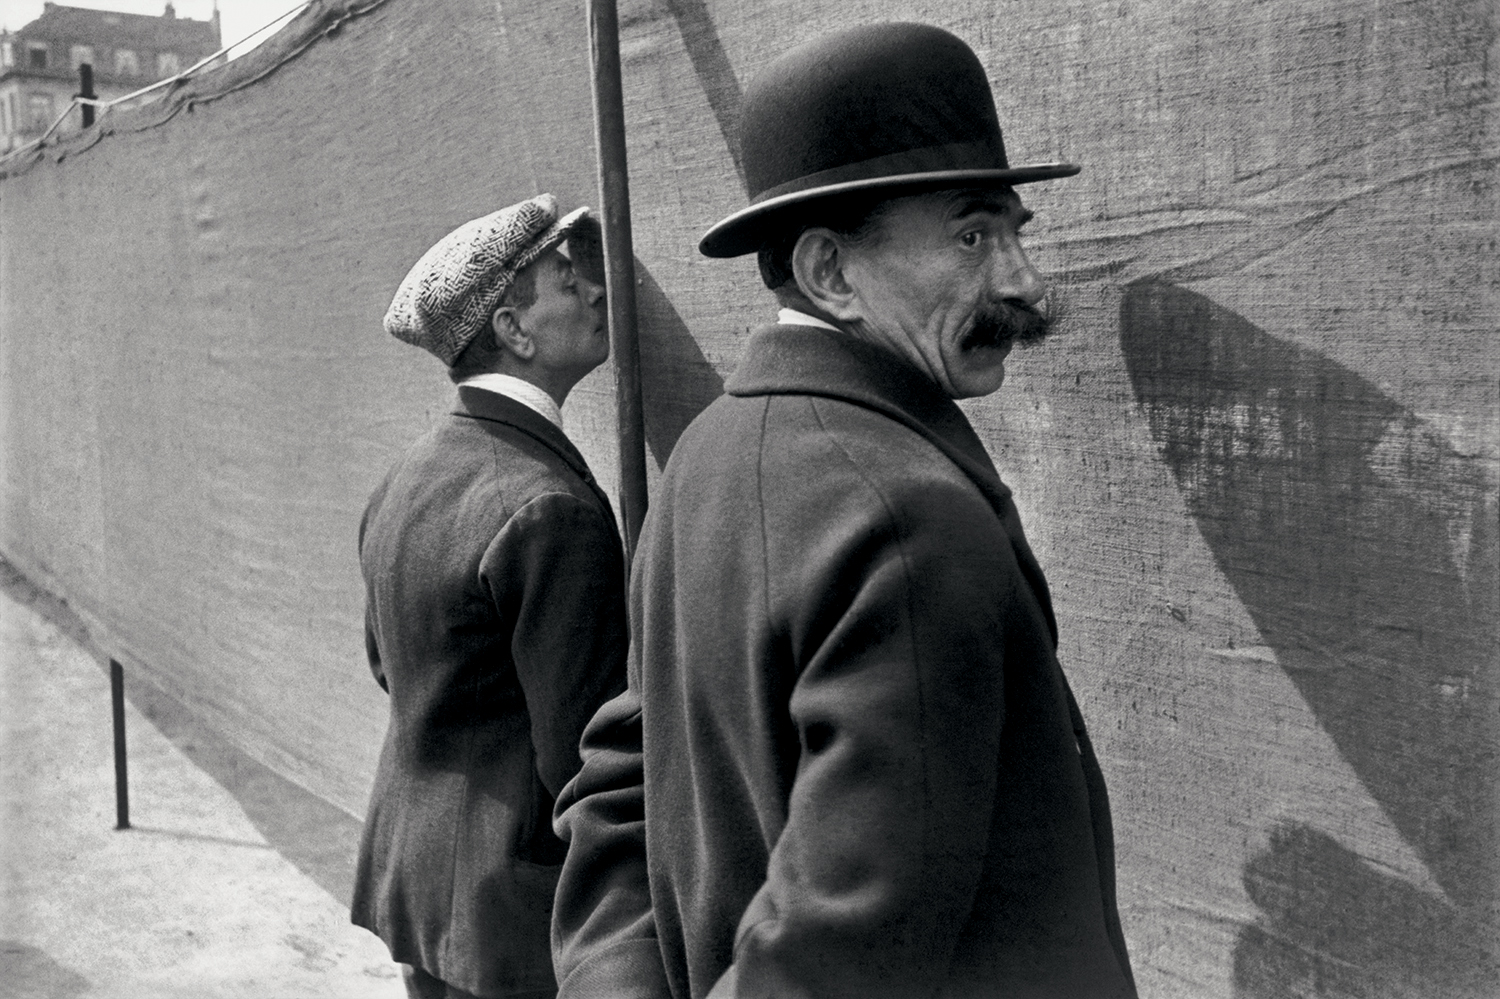 Bruxelles, Belgique, 1932, Henri Cartier-Bresson © Fondation Henri Cartier-Bresson / Magnum Photos